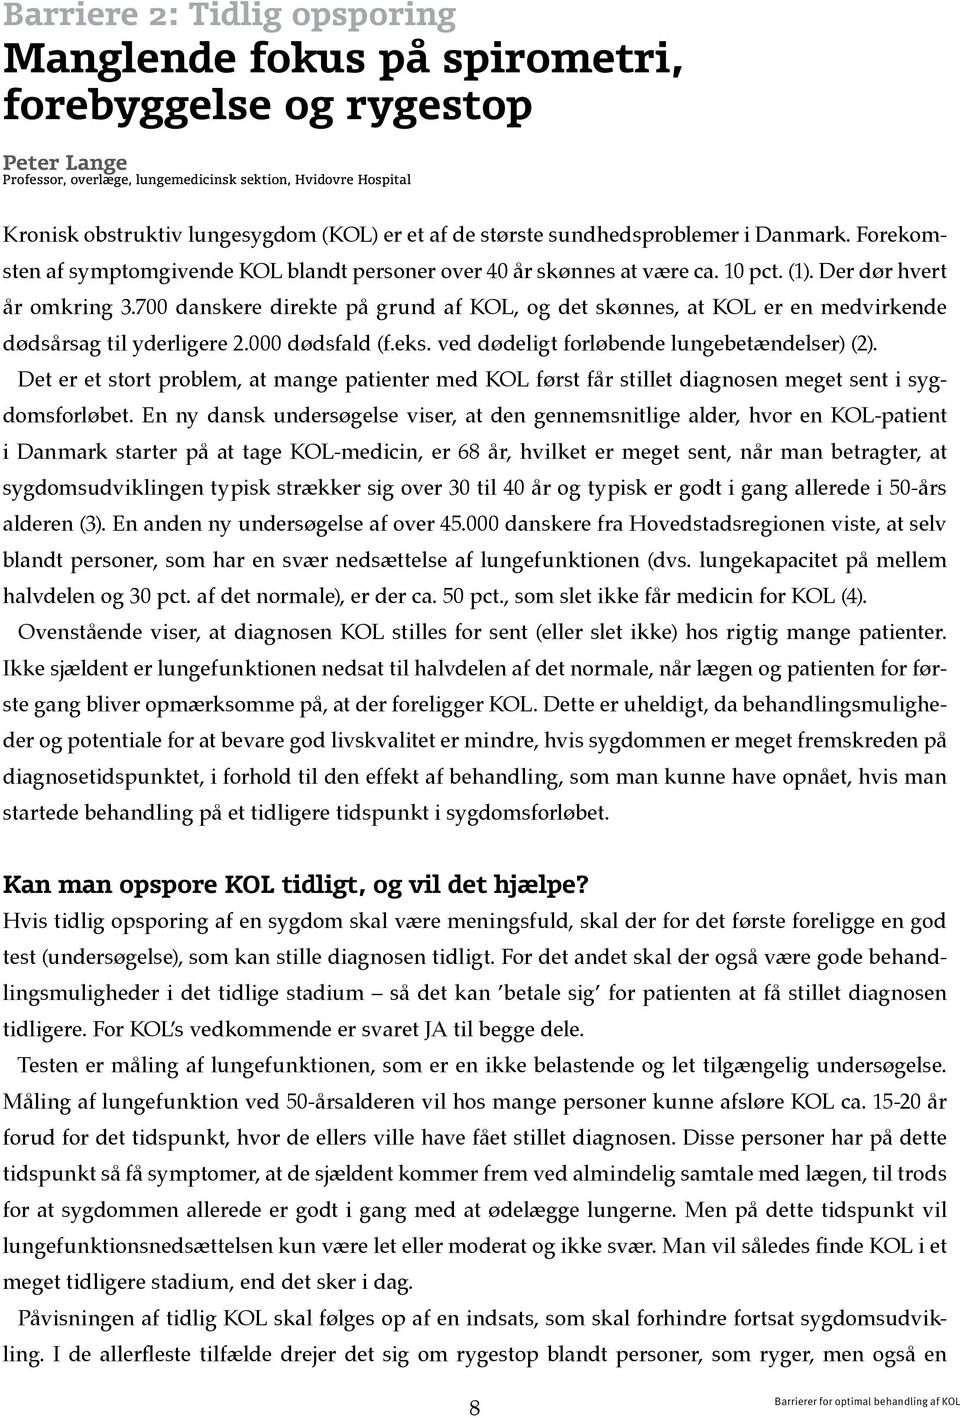 700 danskere direkte på grund af KOL, og det skønnes, at KOL er en medvirkende dødsårsag til yderligere 2.000 dødsfald (f.eks. ved dødeligt forløbende lungebetændelser) (2).